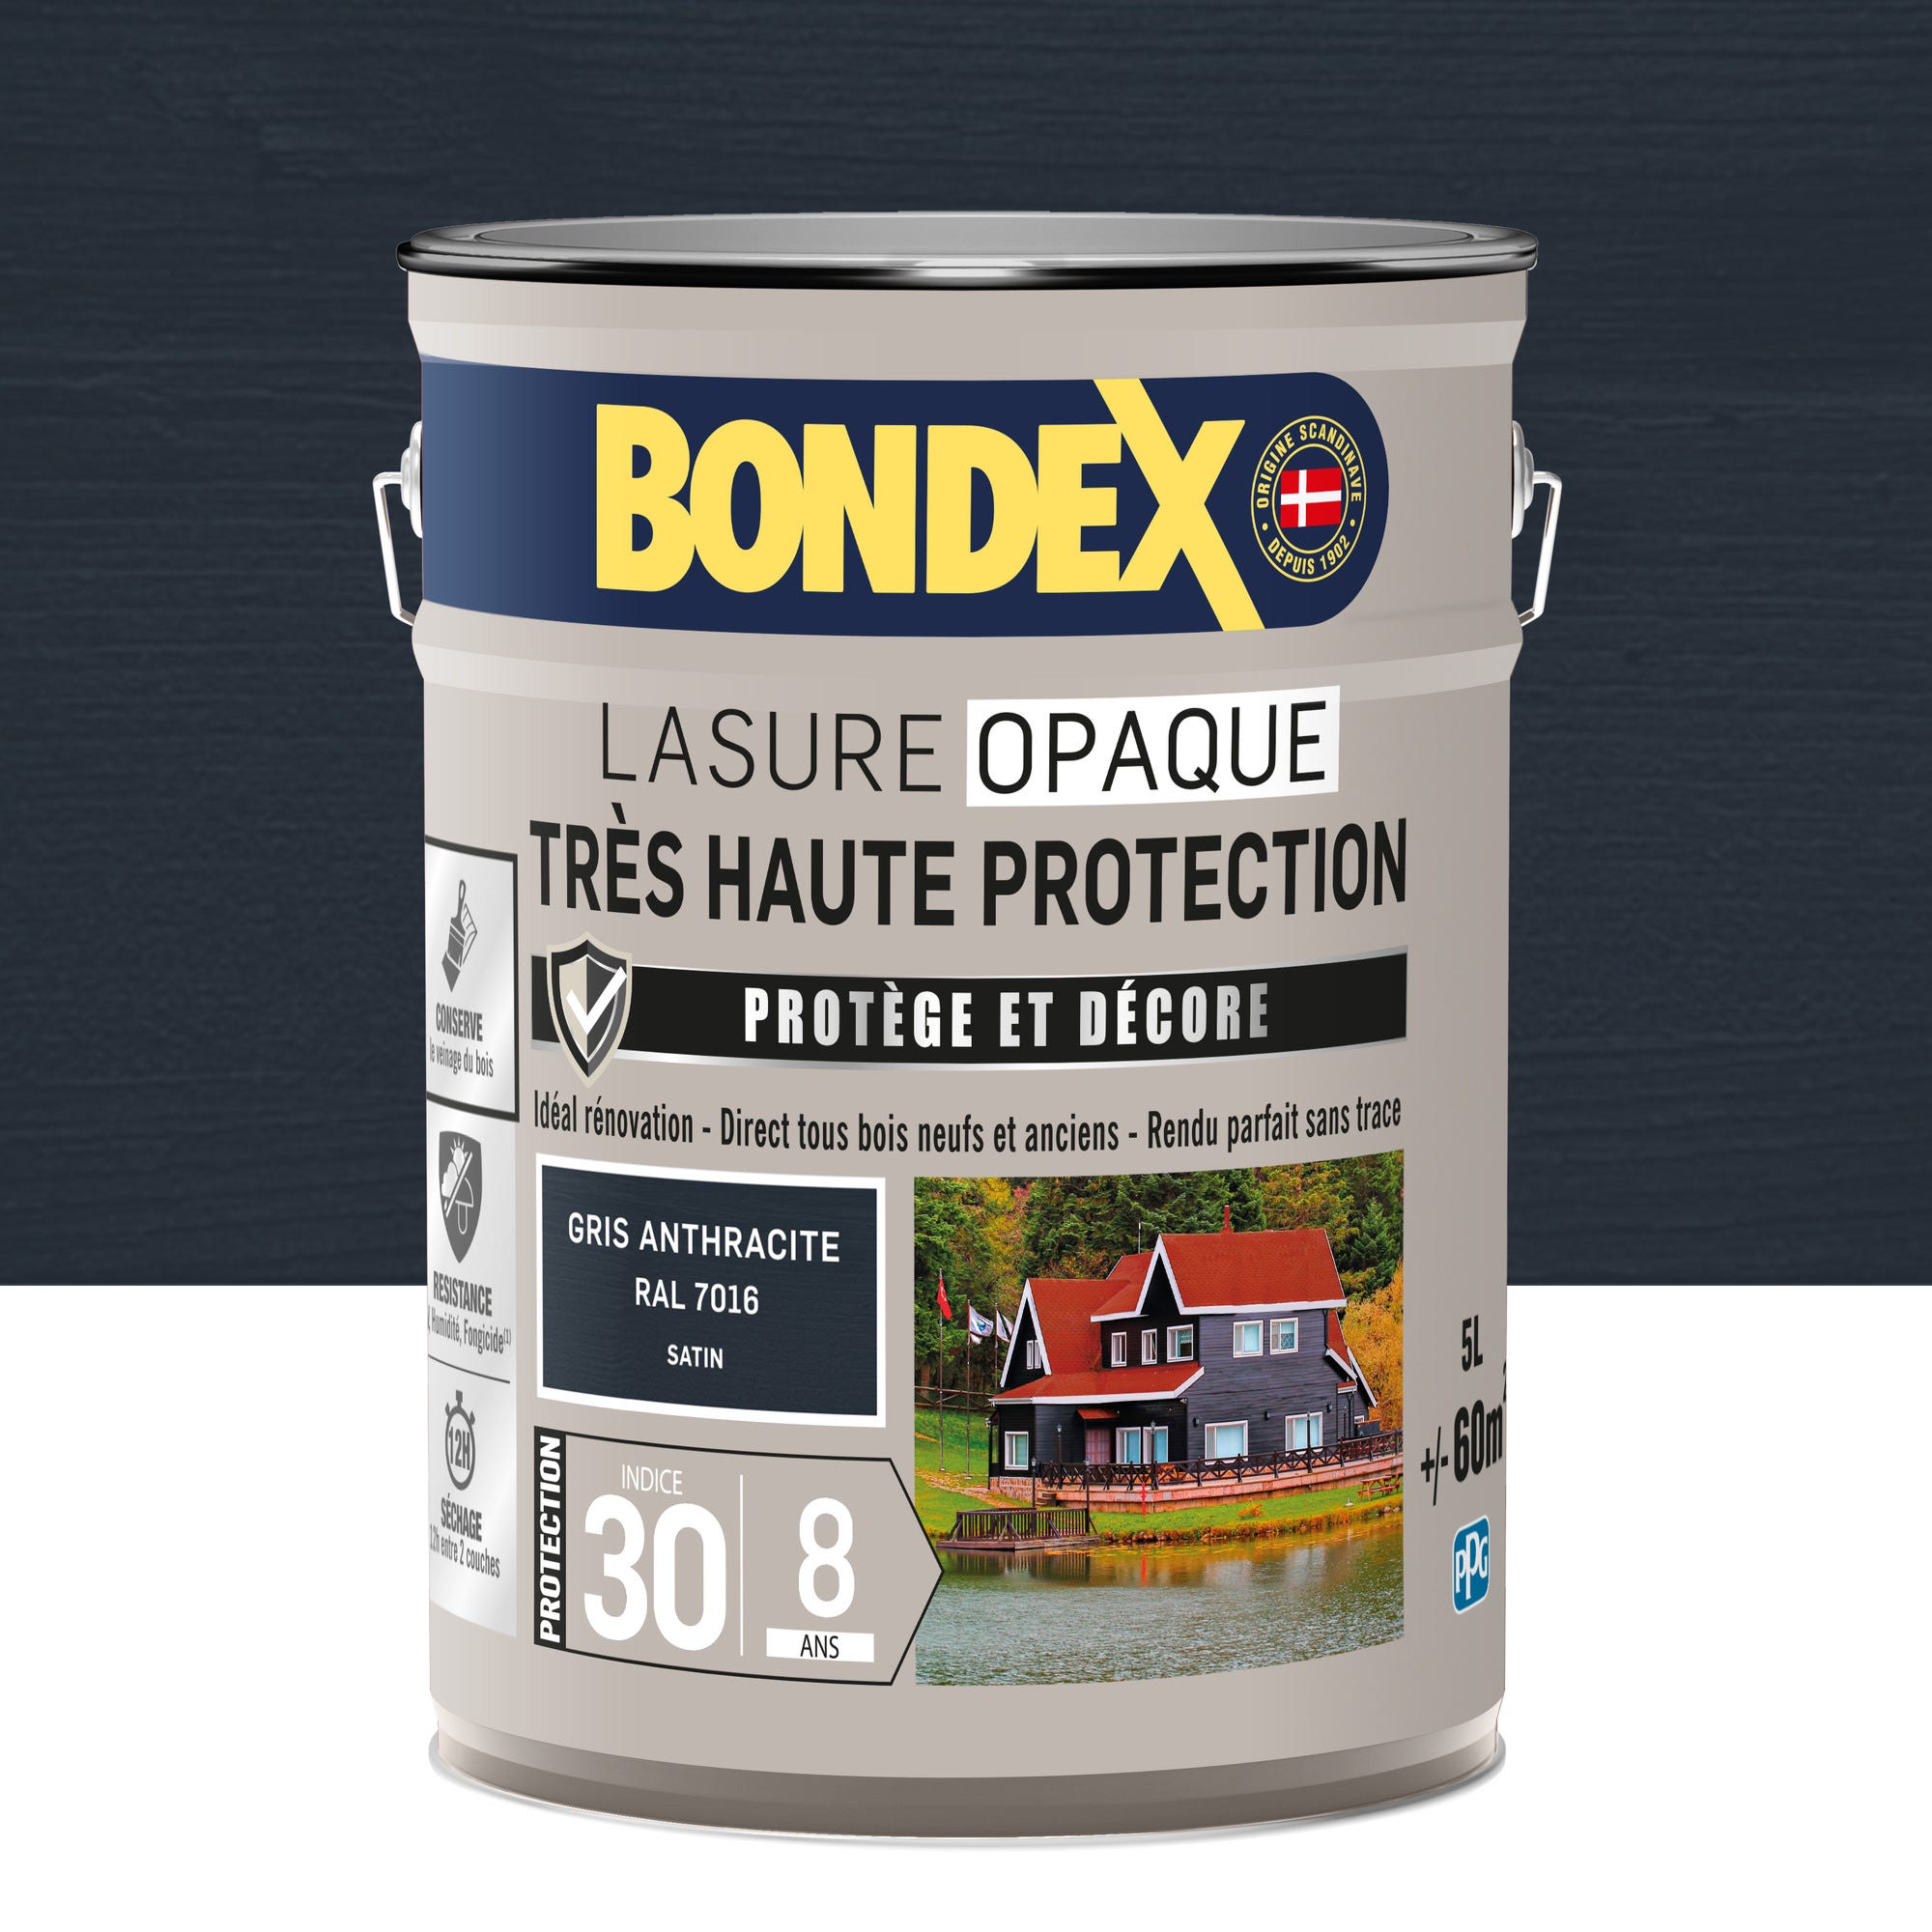 Lasure opaque très haute protection 8 ans gris anthracite 5 L - BONDEX 0